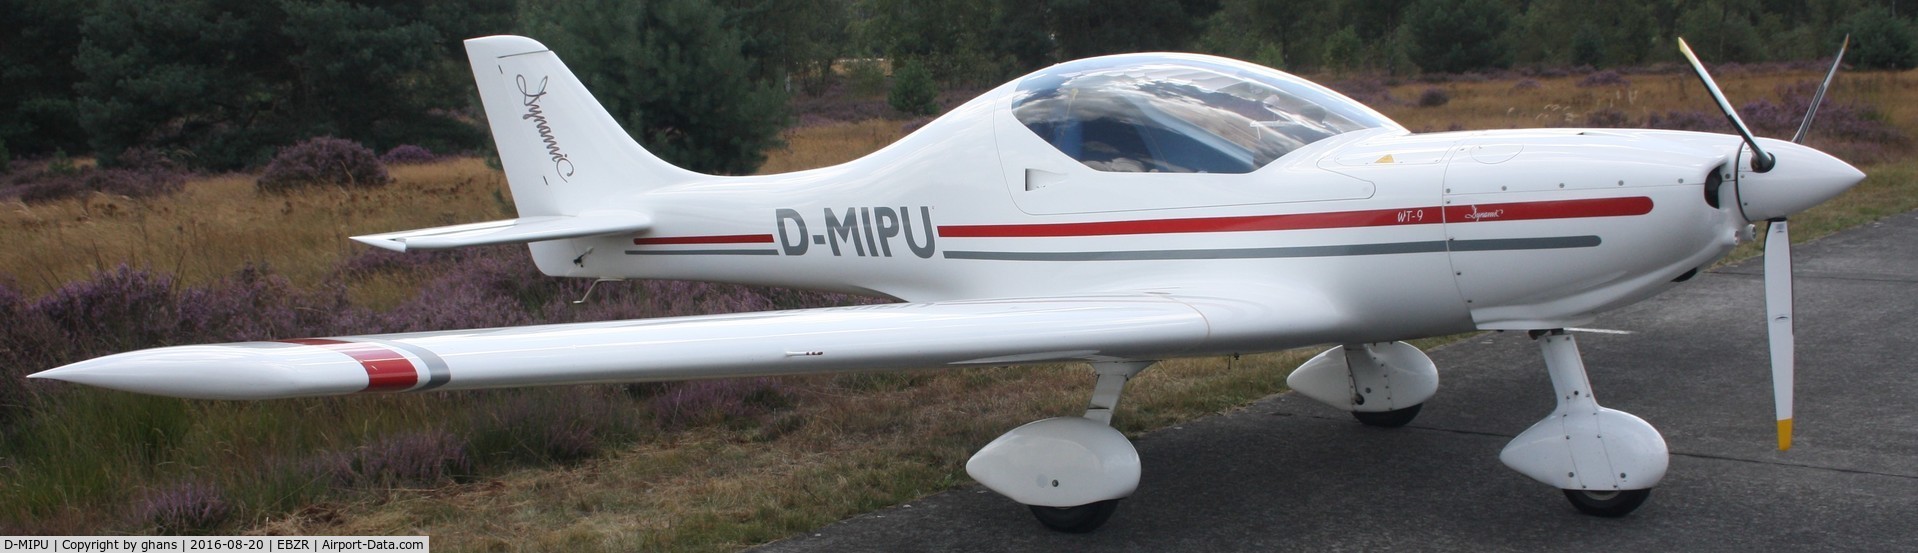 D-MIPU, 2007 Aerospool WT-9 Dynamic C/N DYK18/2007, Fly-In 2016